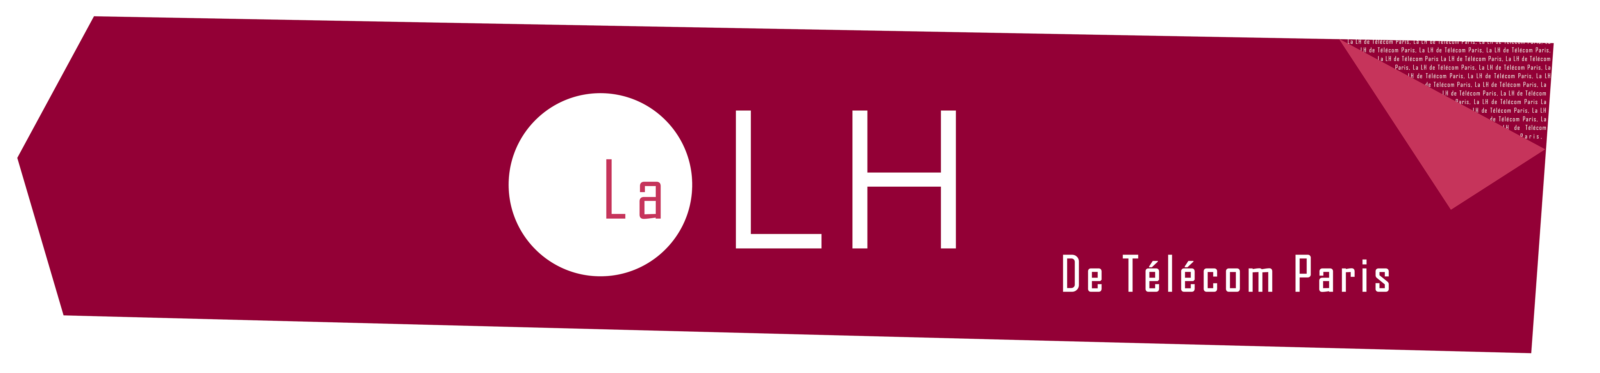 lh_logo.png